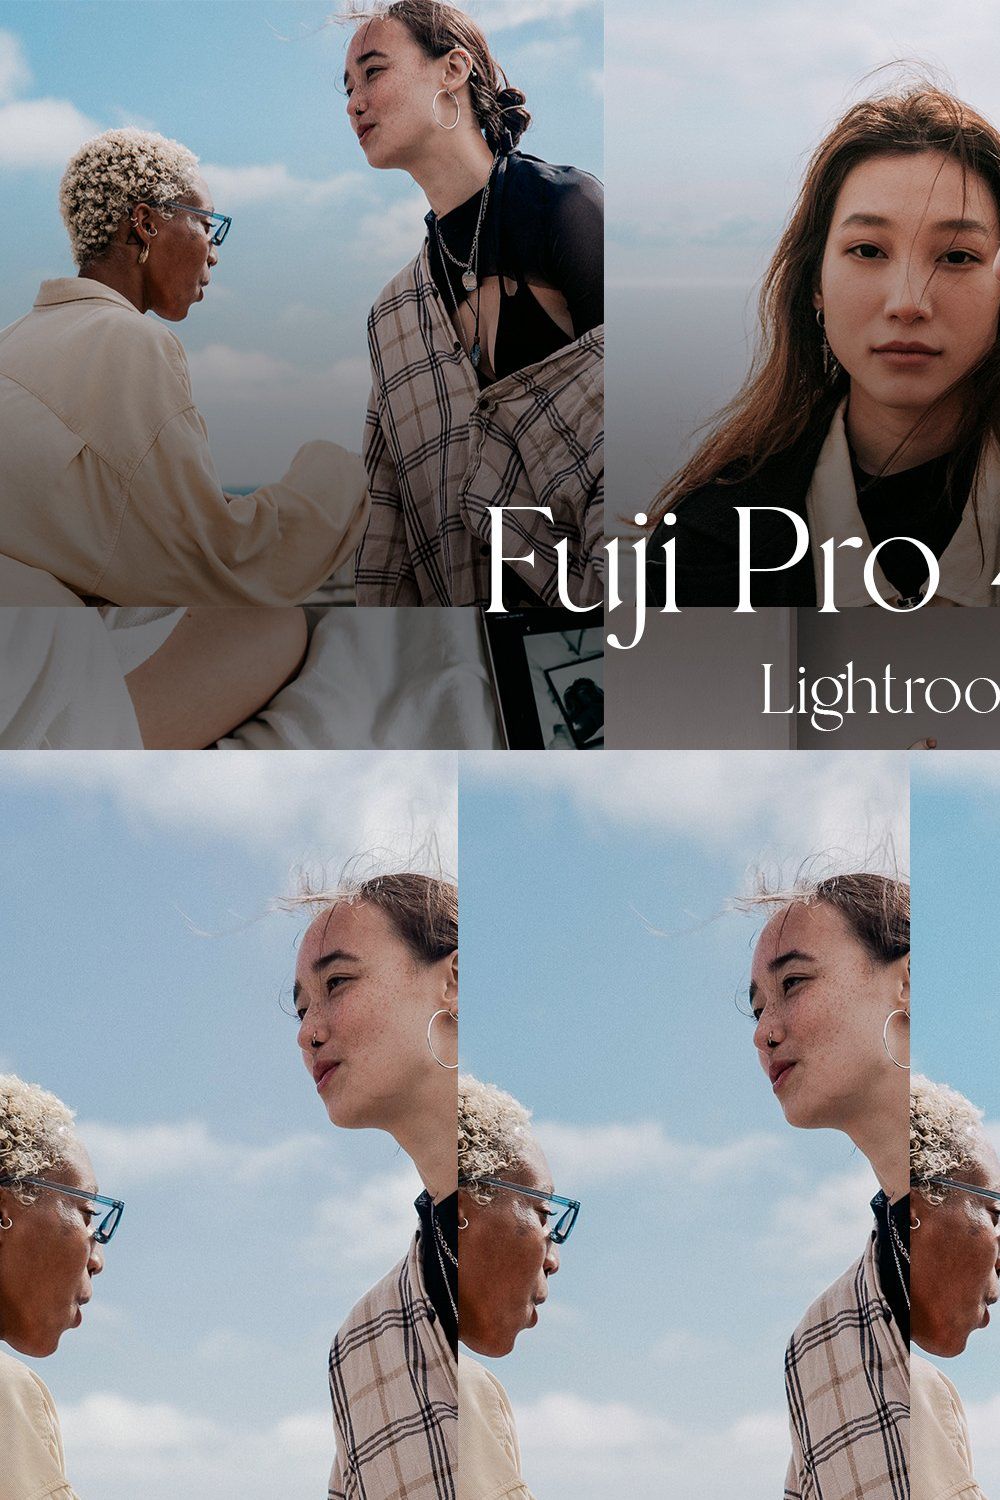 Fuji Pro 400H — Lightroom pinterest preview image.